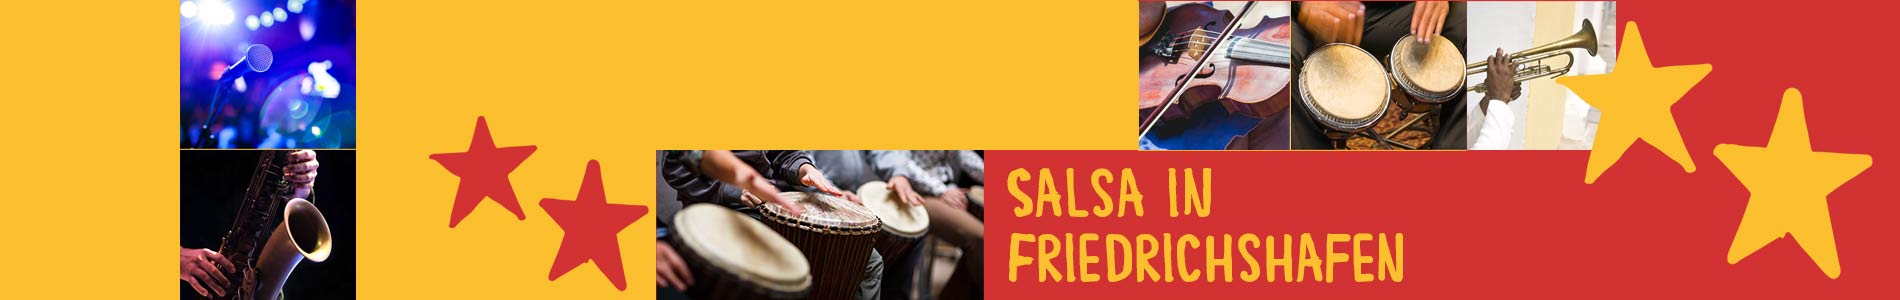 Salsa in Friedrichshafen – Salsa lernen und tanzen, Tanzkurse, Partys, Veranstaltungen